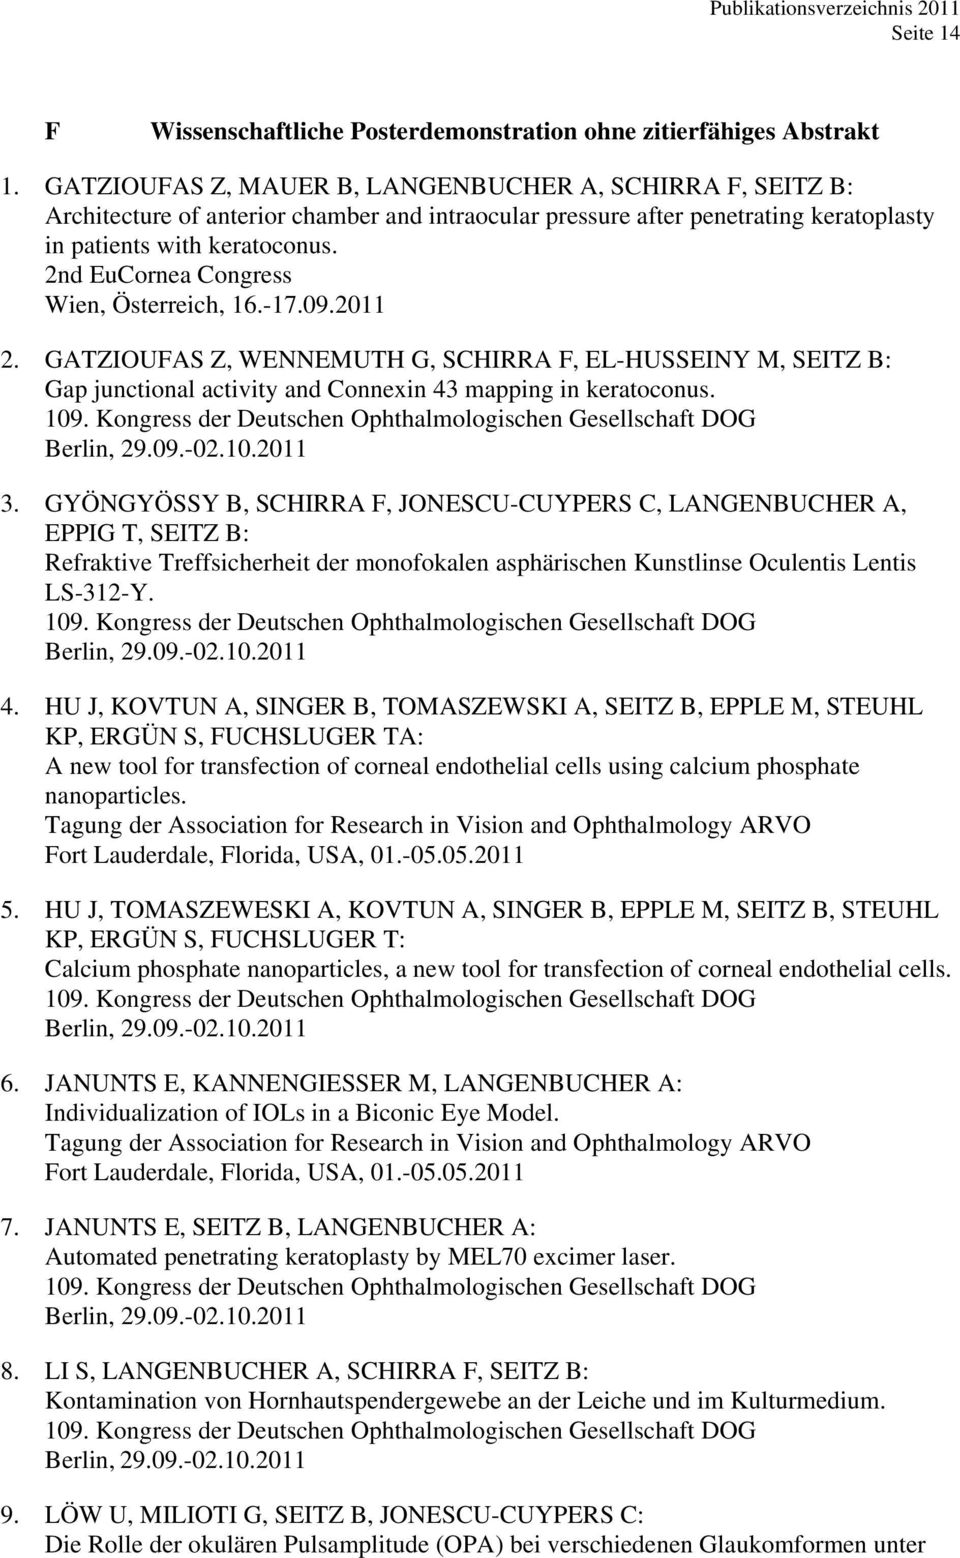 2nd EuCornea Congress Wien, Österreich, 16.-17.09.2011 2. GATZIOUFAS Z, WENNEMUTH G, SCHIRRA F, EL-HUSSEINY M, SEITZ B: Gap junctional activity and Connexin 43 mapping in keratoconus. 3.